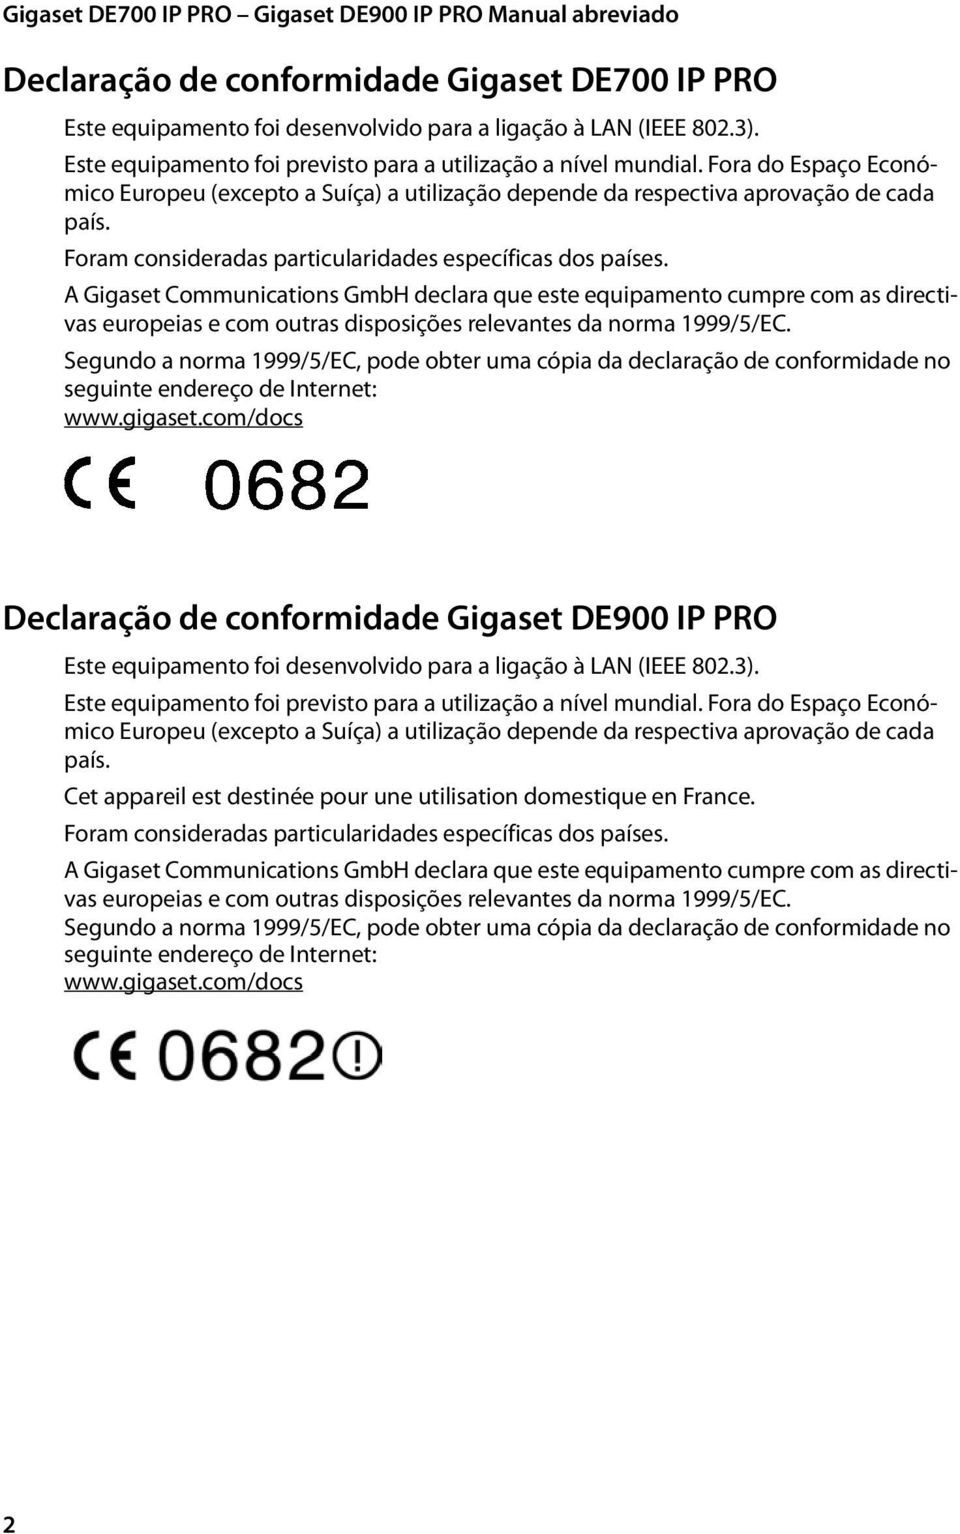 A Gigaset Communications GmbH declara que este equipamento cumpre com as directivas europeias e com outras disposições relevantes da norma 999/5/EC.